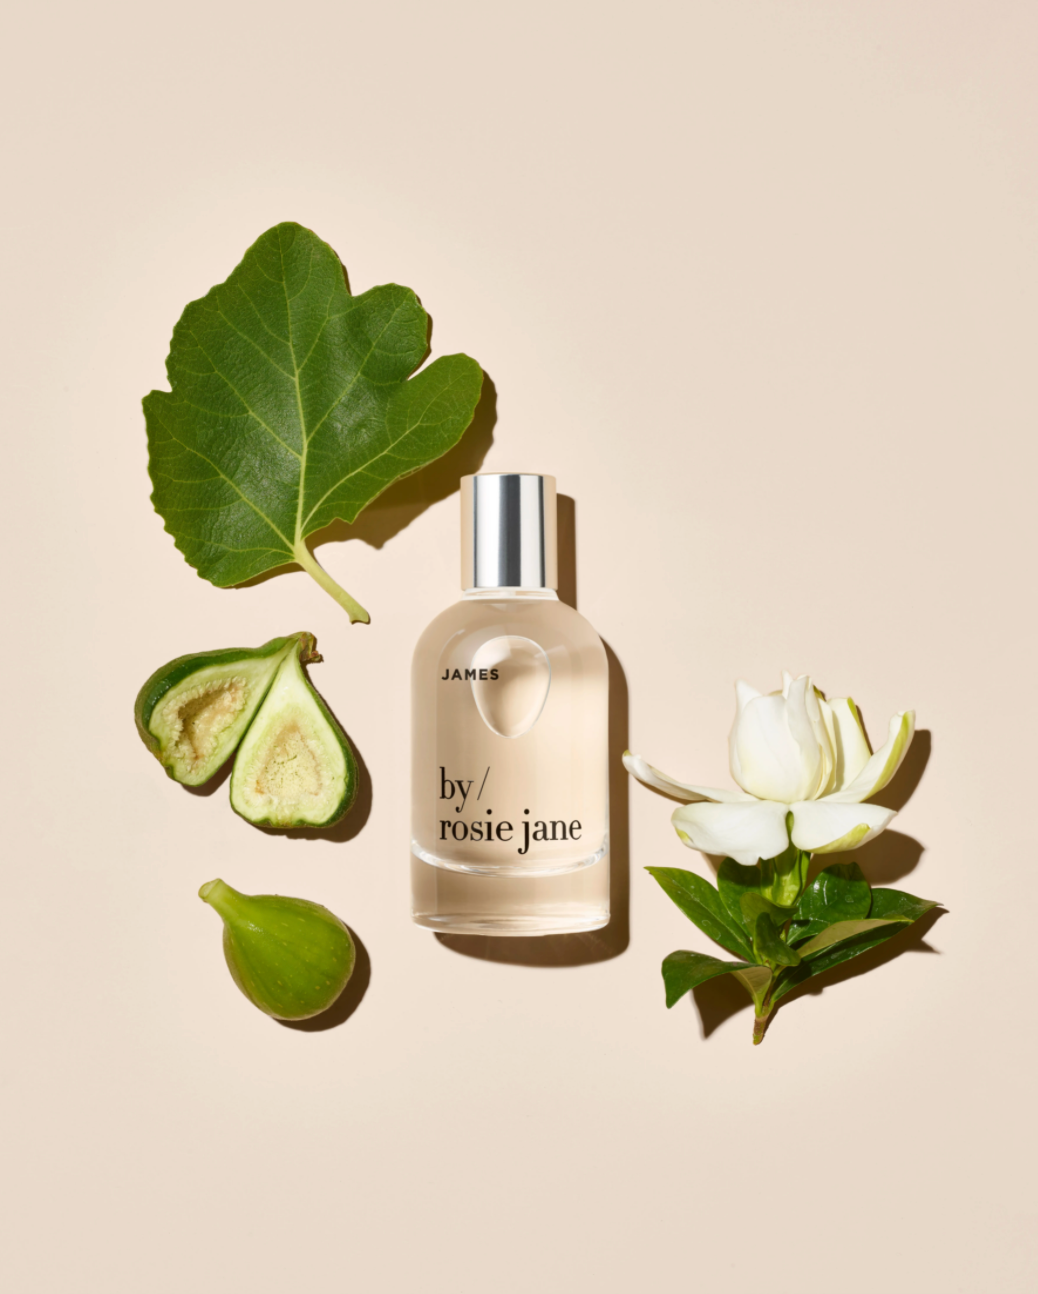 by rosie jane / eau de parfum - james